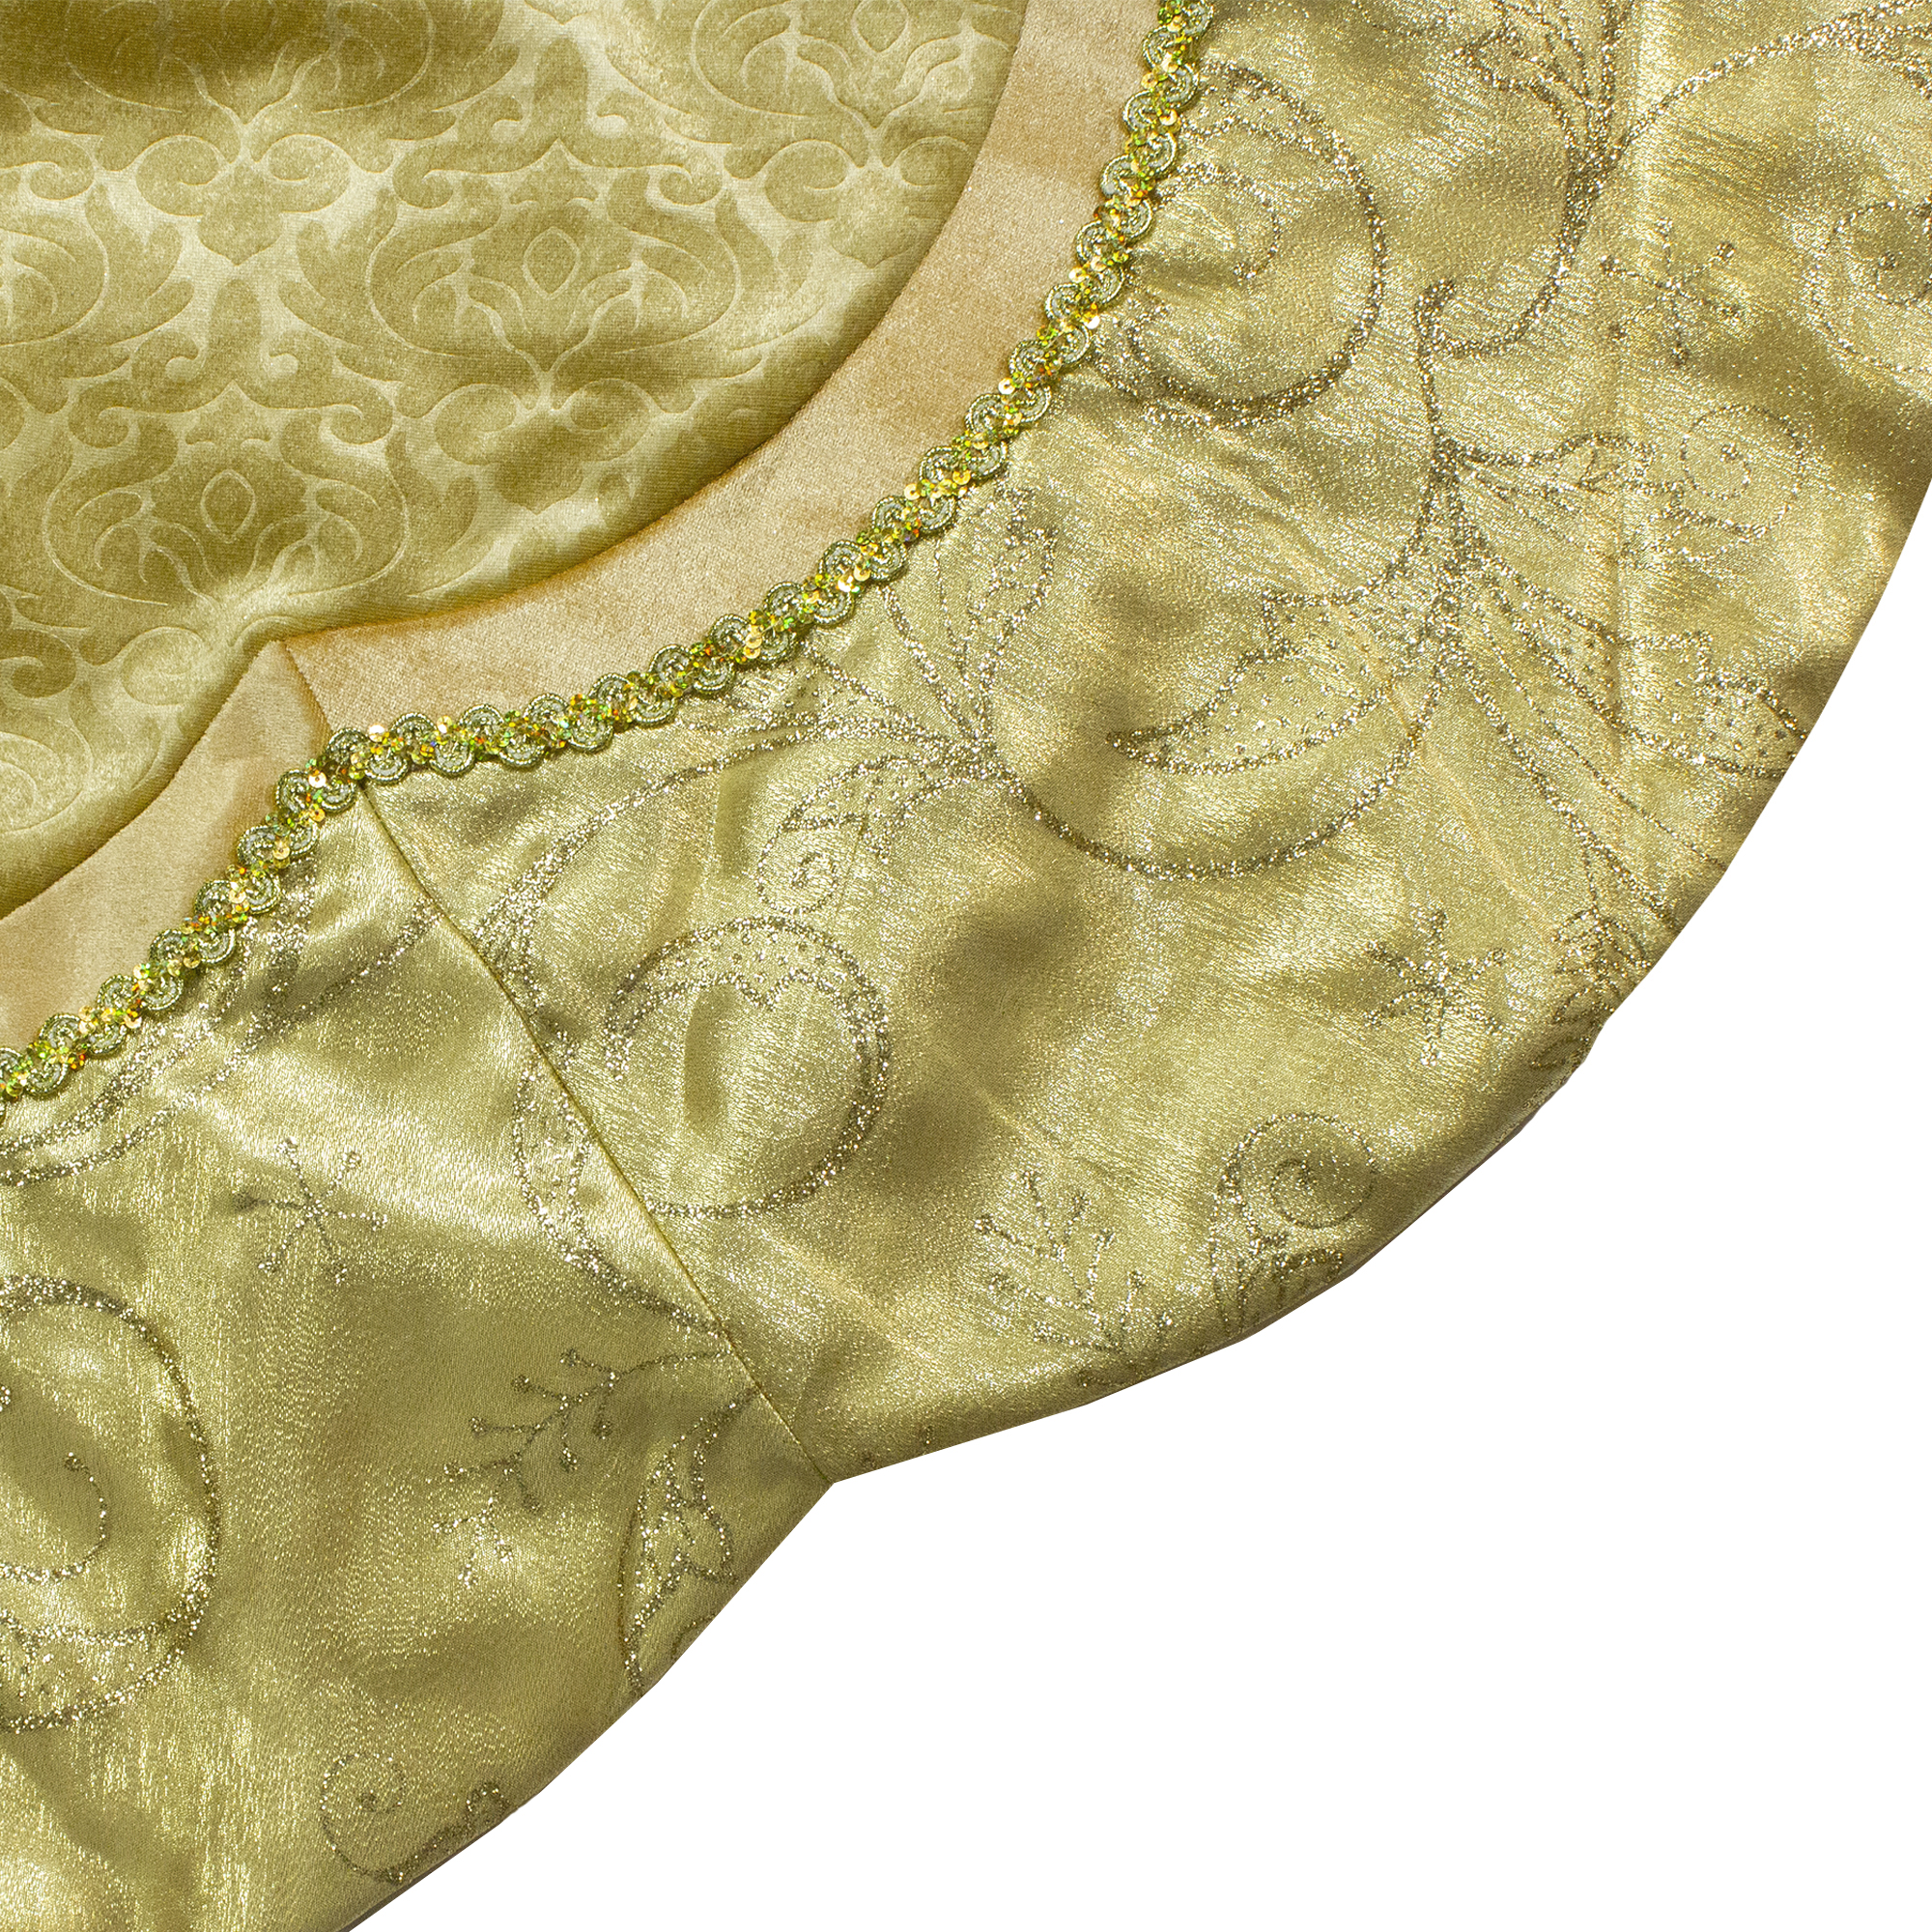 Northlight 48-Inch Golden Scalloped Velvet Christmas Tree Skirt With a Metallic Trim